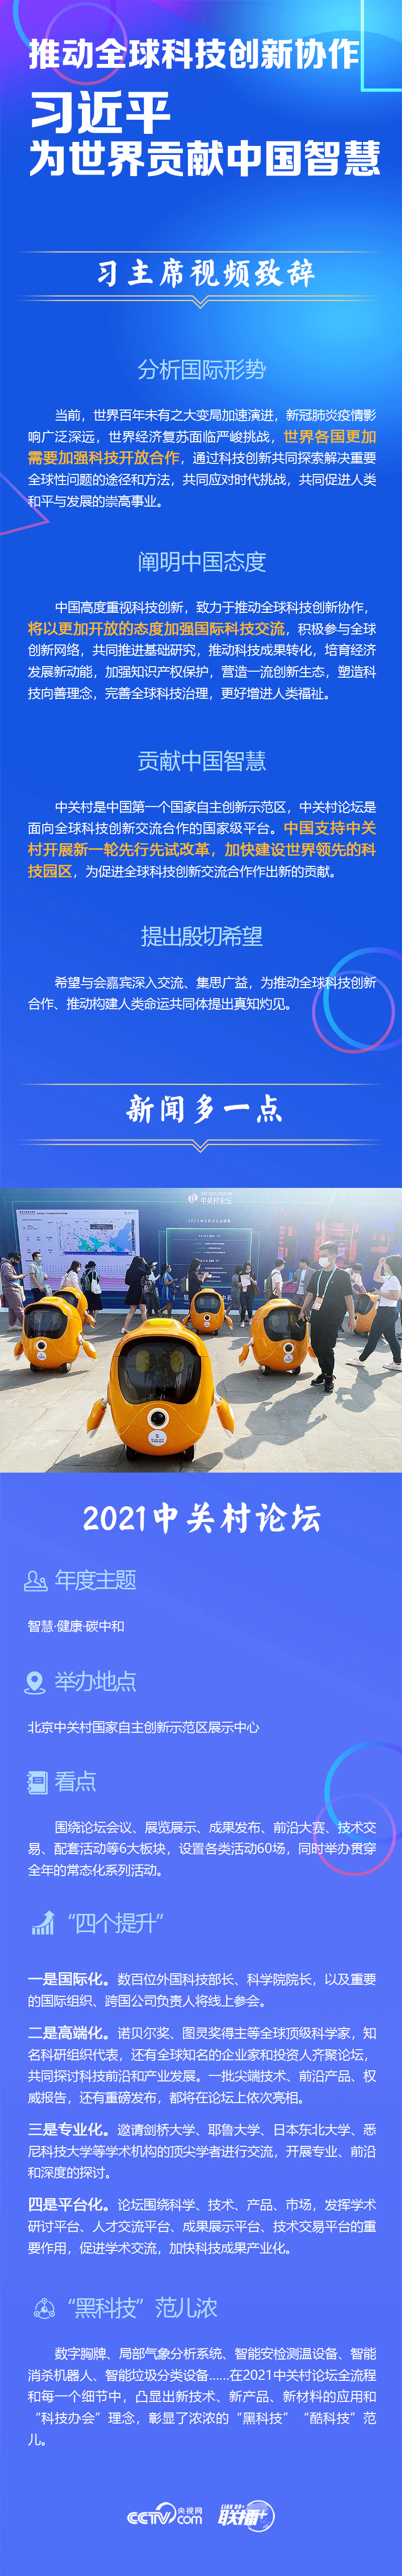 推动全球科技创新协作 习近平为世界贡献中国智慧